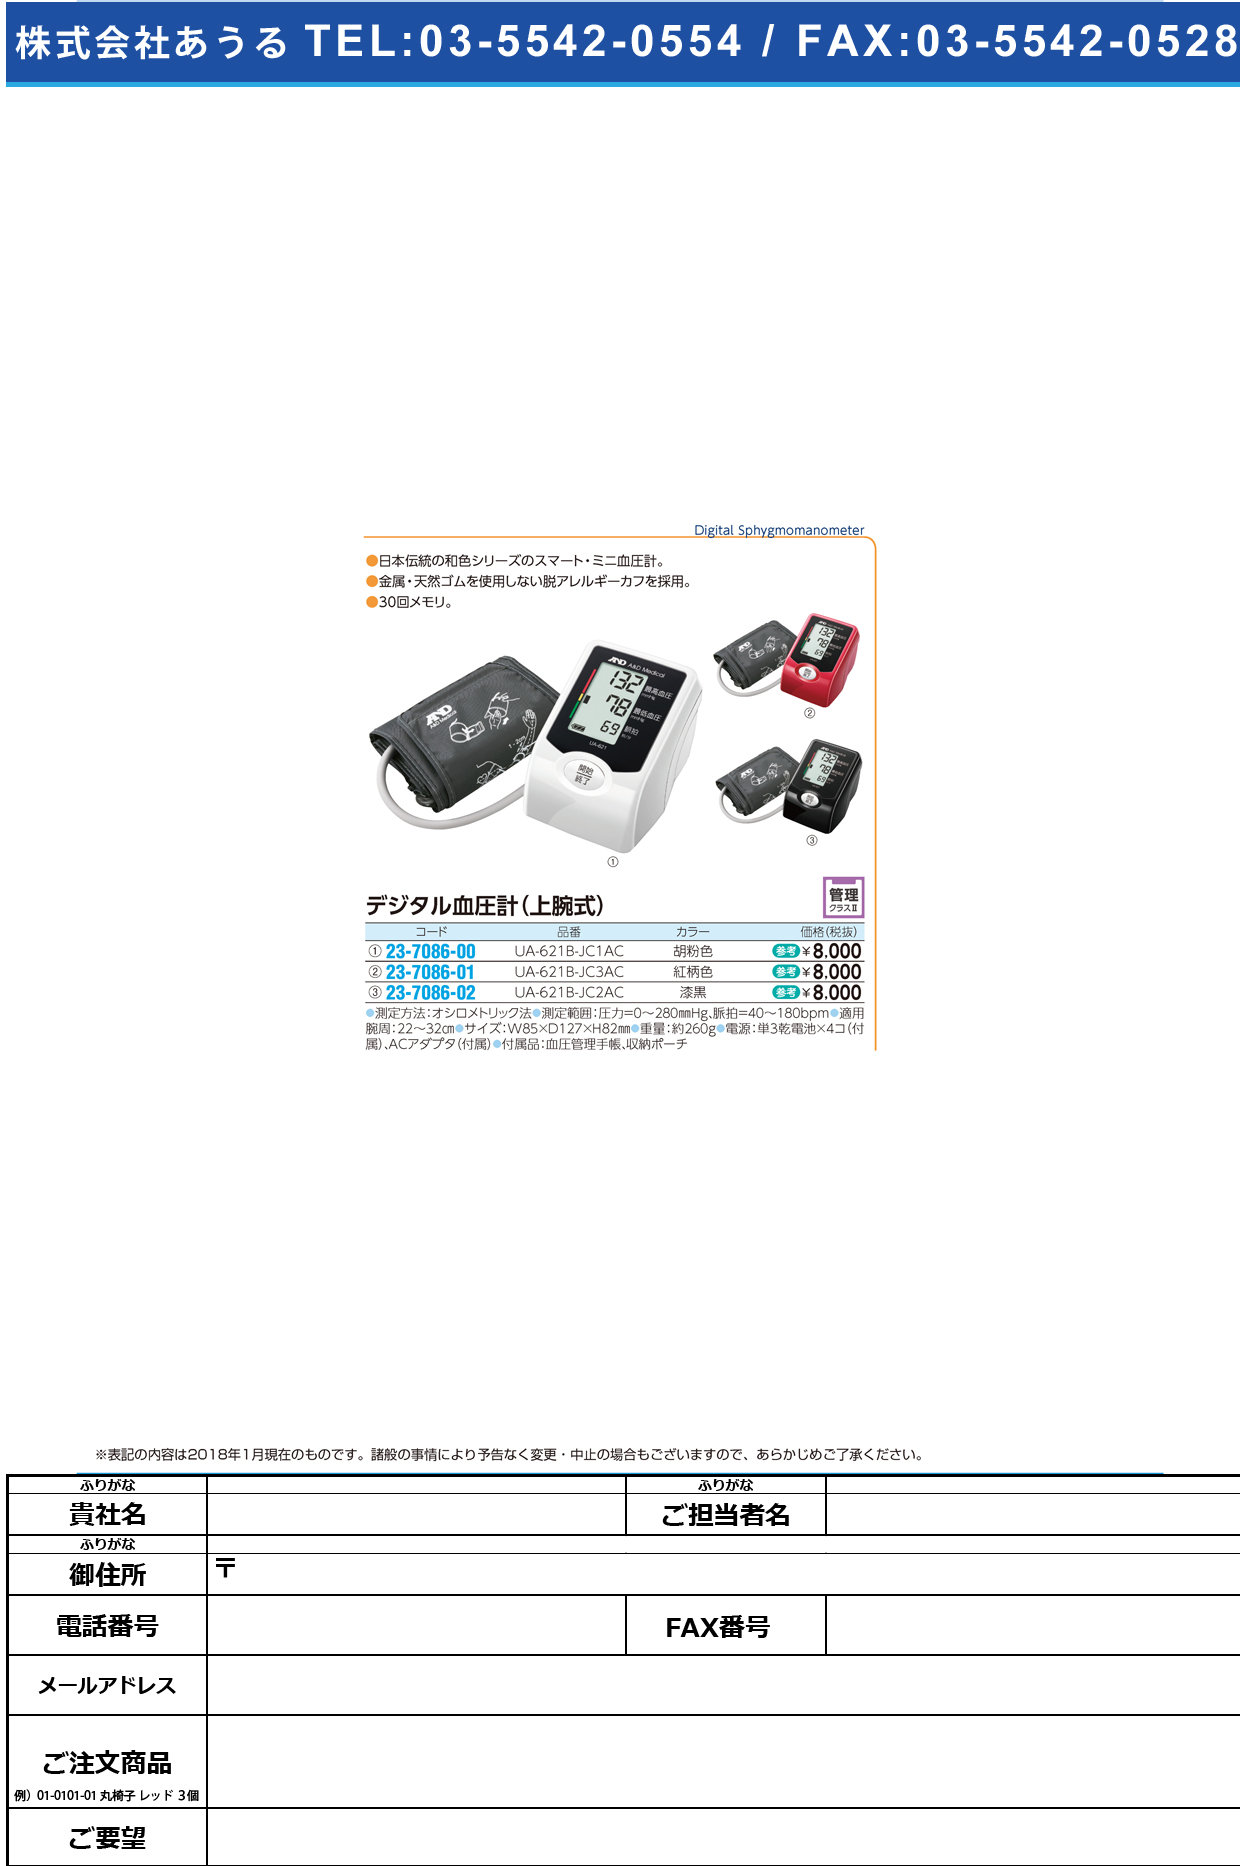 (23-7086-02)デジタル血圧計（上腕式）漆黒 UA-621B-JC2AC(ｼｯｺｸ) ﾃﾞｼﾞﾀﾙｹﾂｱﾂｹｲ(ｼﾞｮｳﾜﾝ)(エー・アンド・デイ)【1台単位】【2018年カタログ商品】